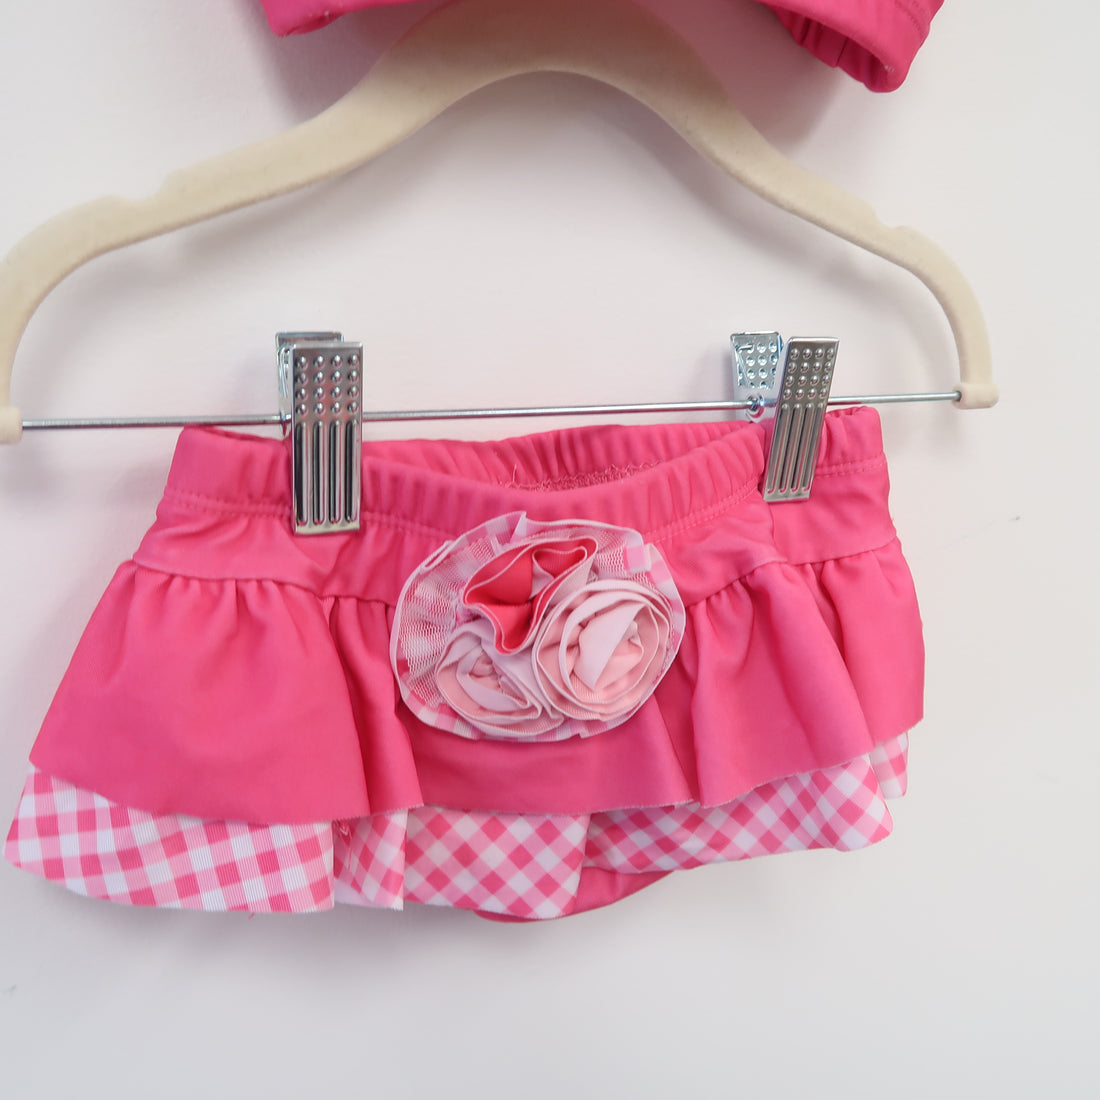 Nannette Baby - Swimwear (18M)